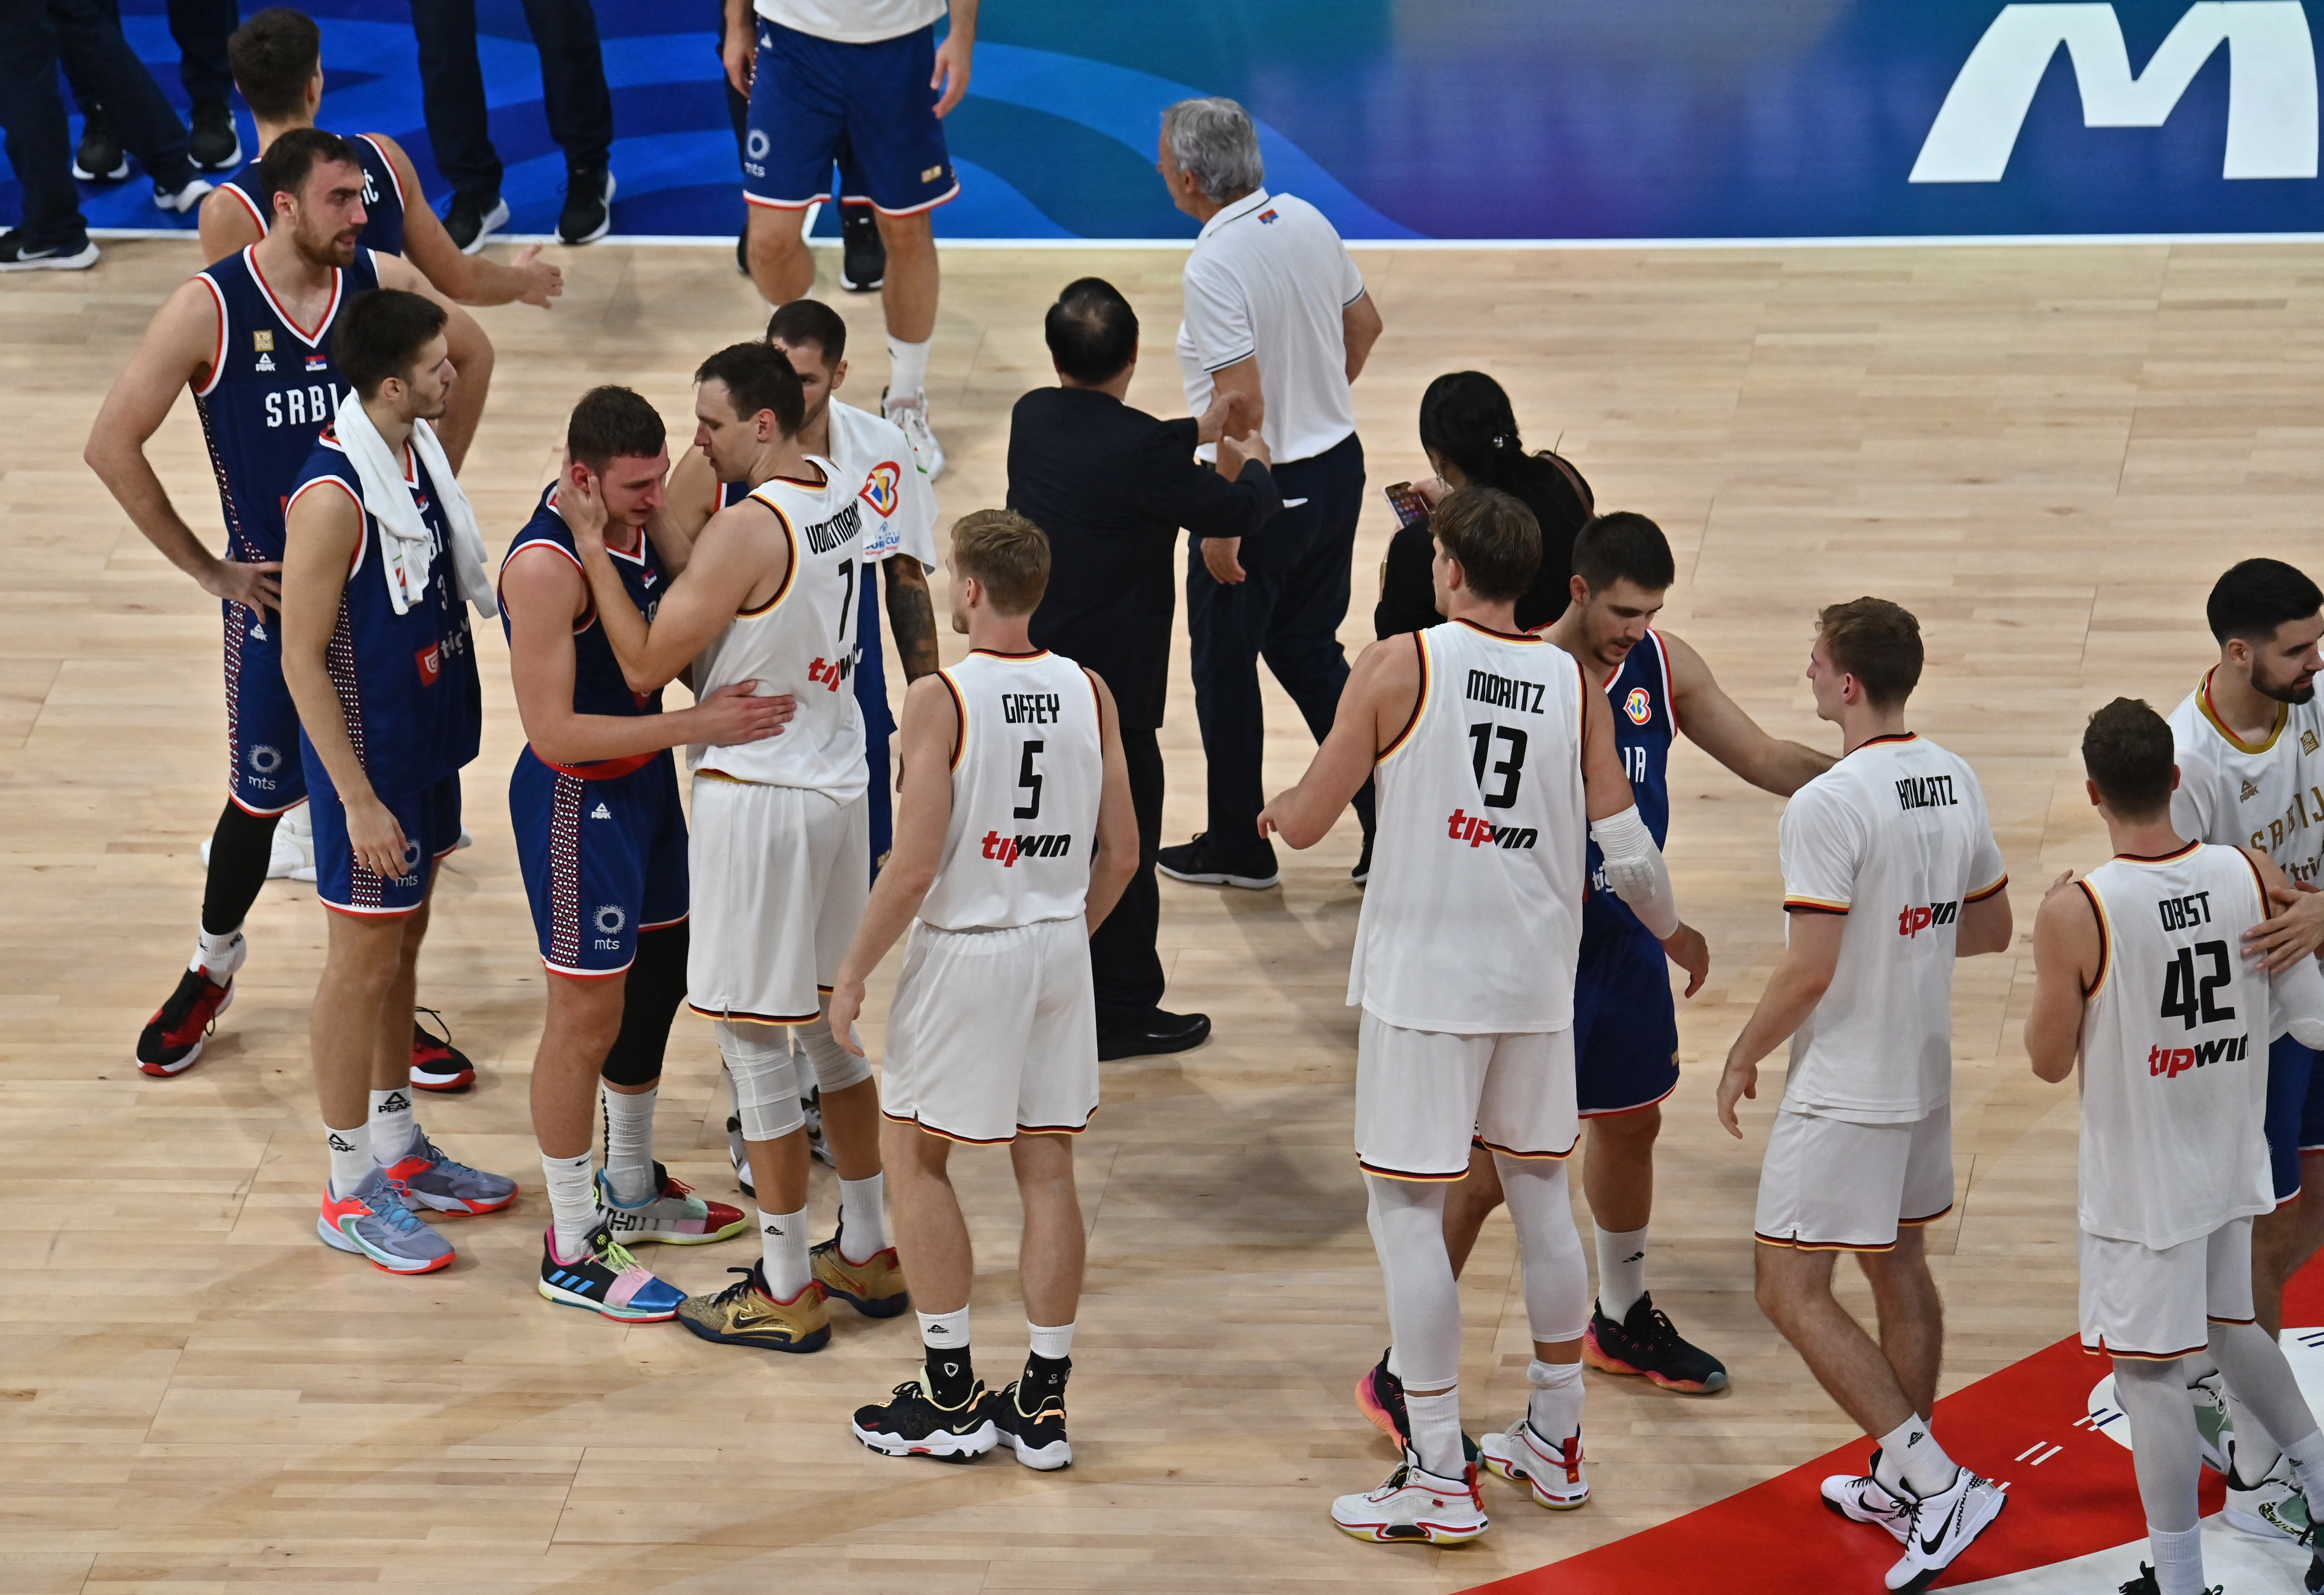 kto体育平台下载德国队在 2023 年世界篮联世界杯上从塞尔维亚队手中夺取了队史首个冠军，征服了世界